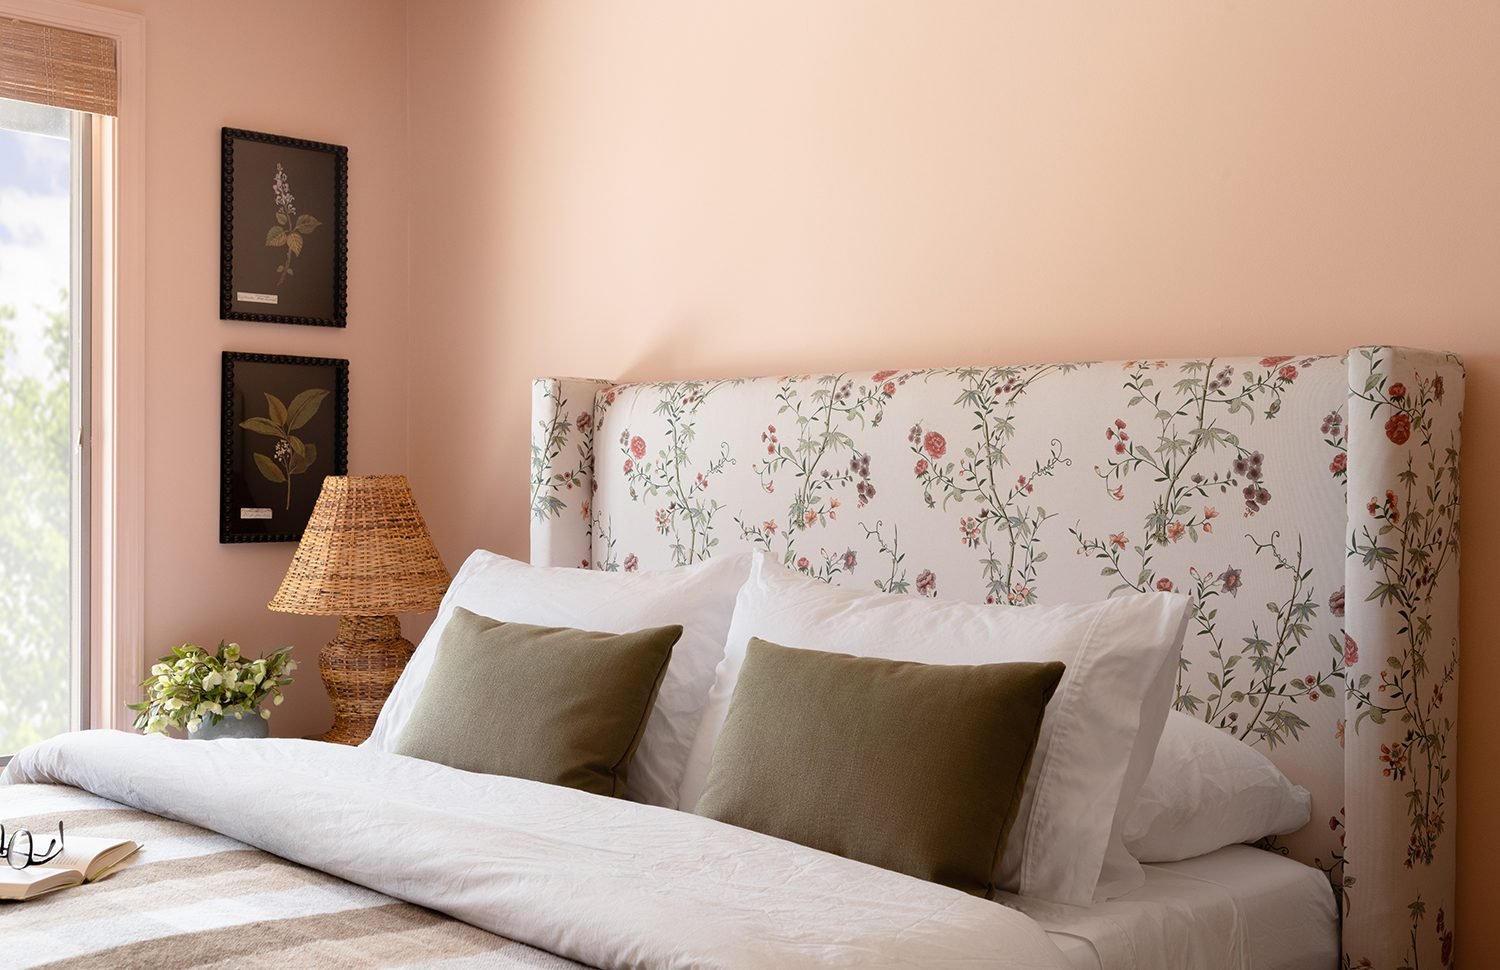 30 Teen Bedroom Color Ideas | HGTV